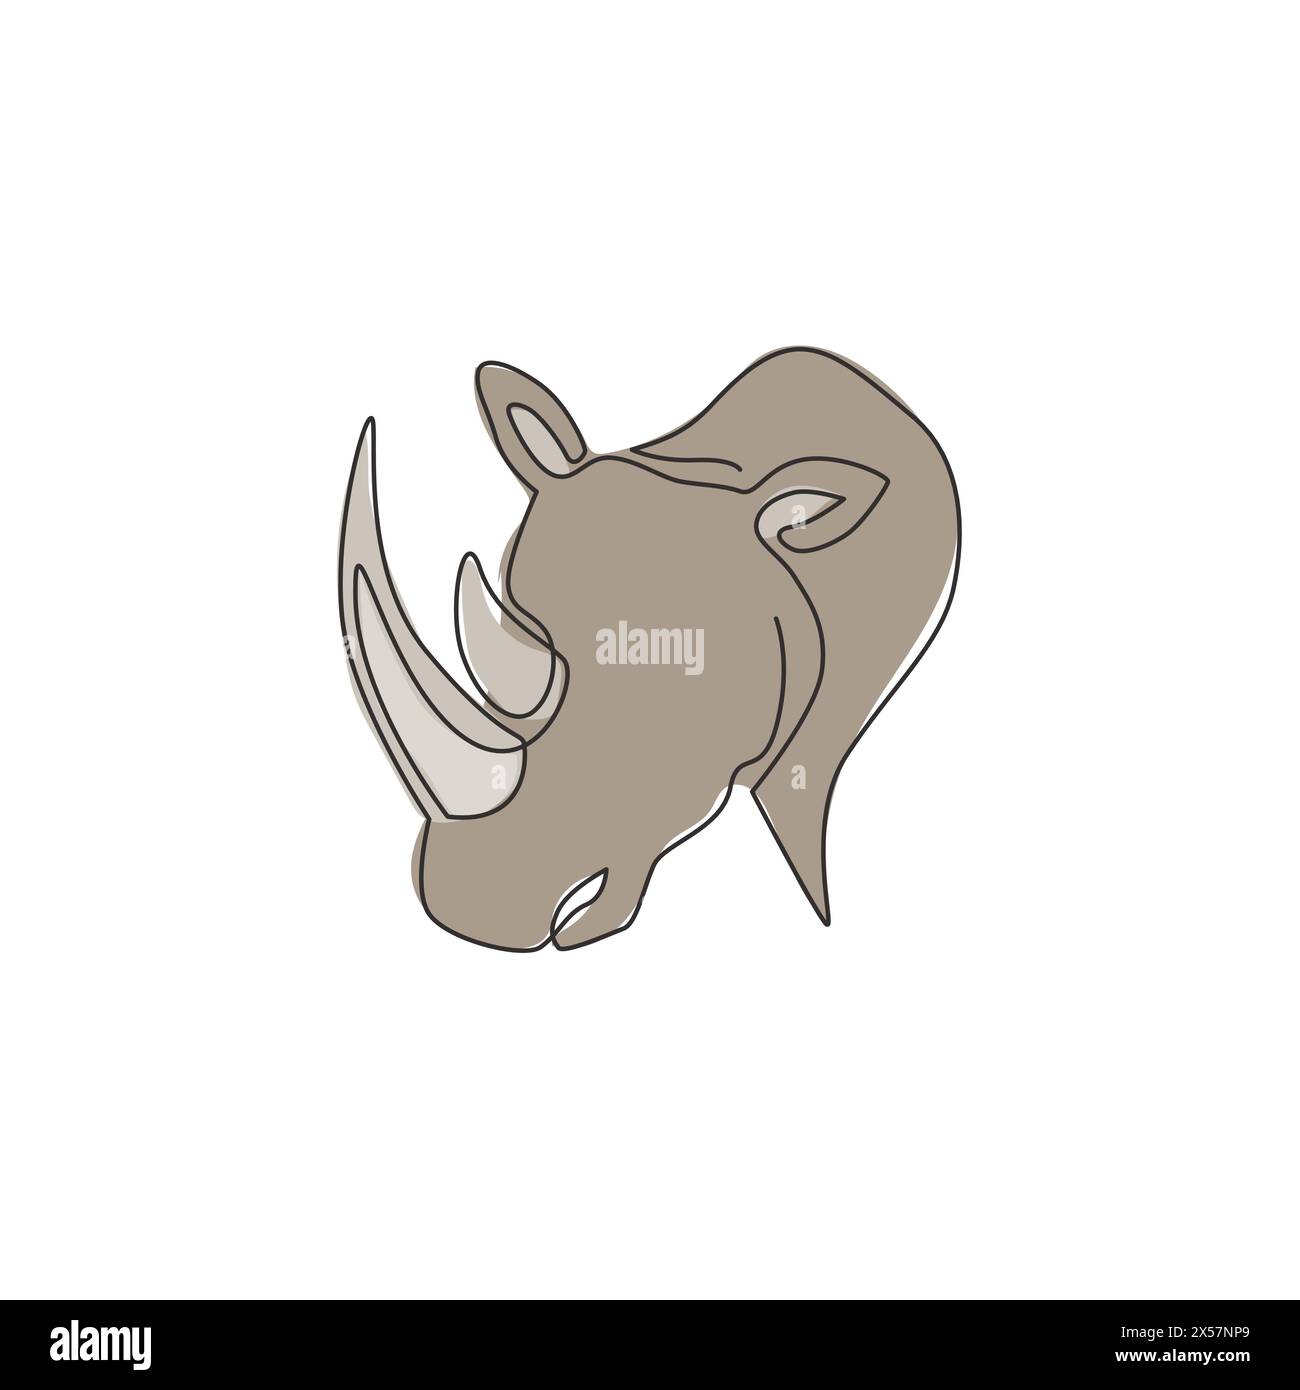 Un dessin de ligne continue de la tête de rhinocéros blanc fort pour l'identité du logo de l'entreprise. Concept de mascotte d'animaux rhinocéros africains pour safari zoologique national. Si Illustration de Vecteur